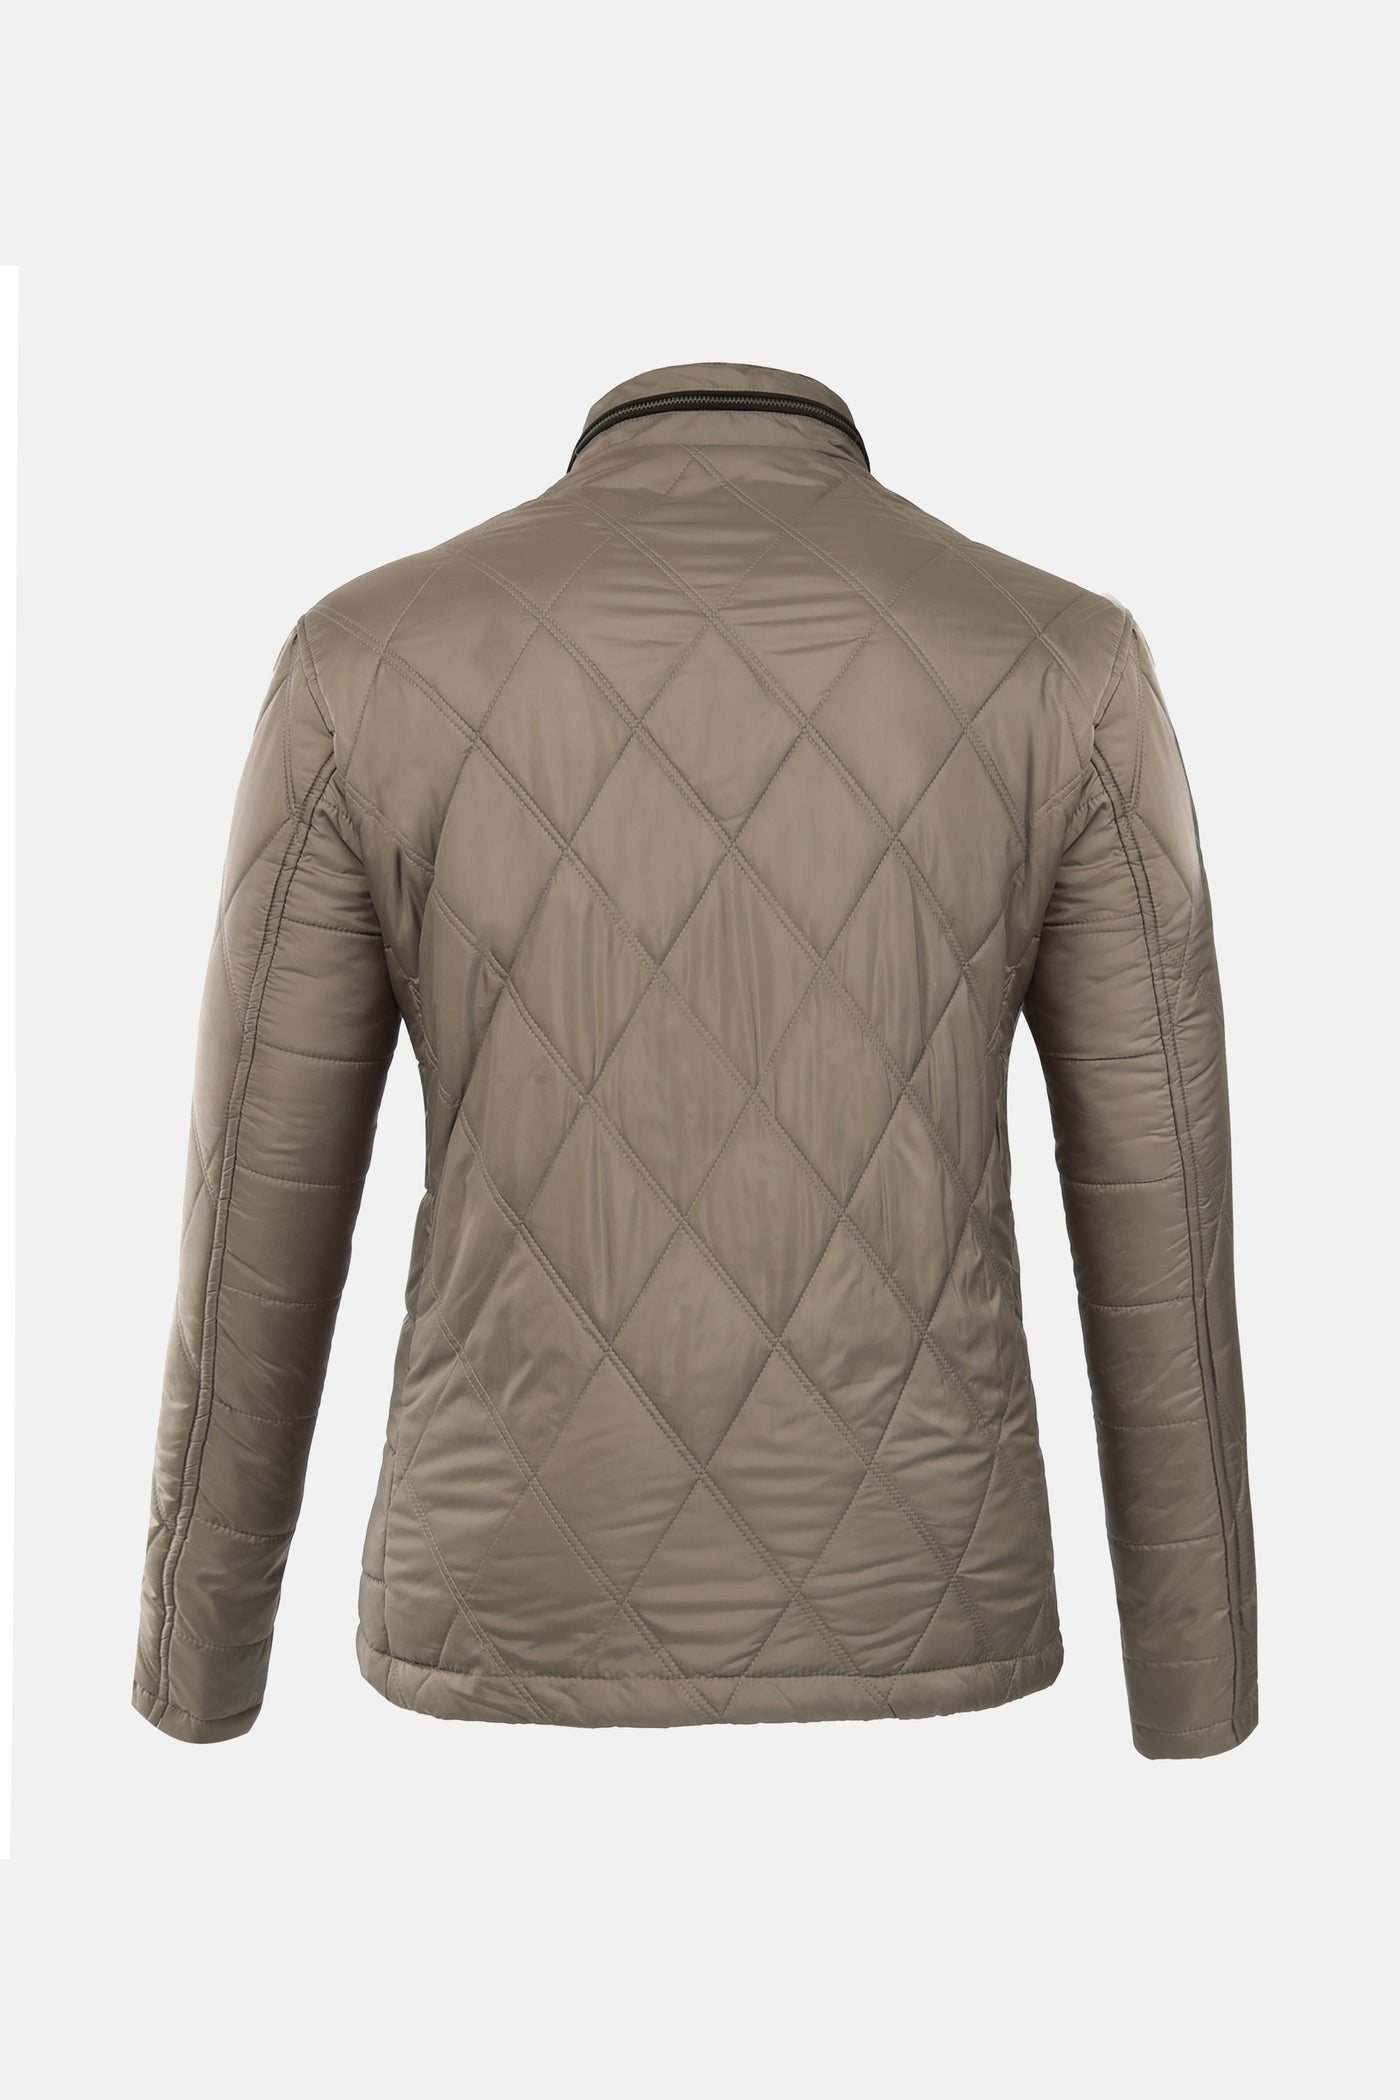 Diamond Shape Waterproof Light Beige Sweater Jacket